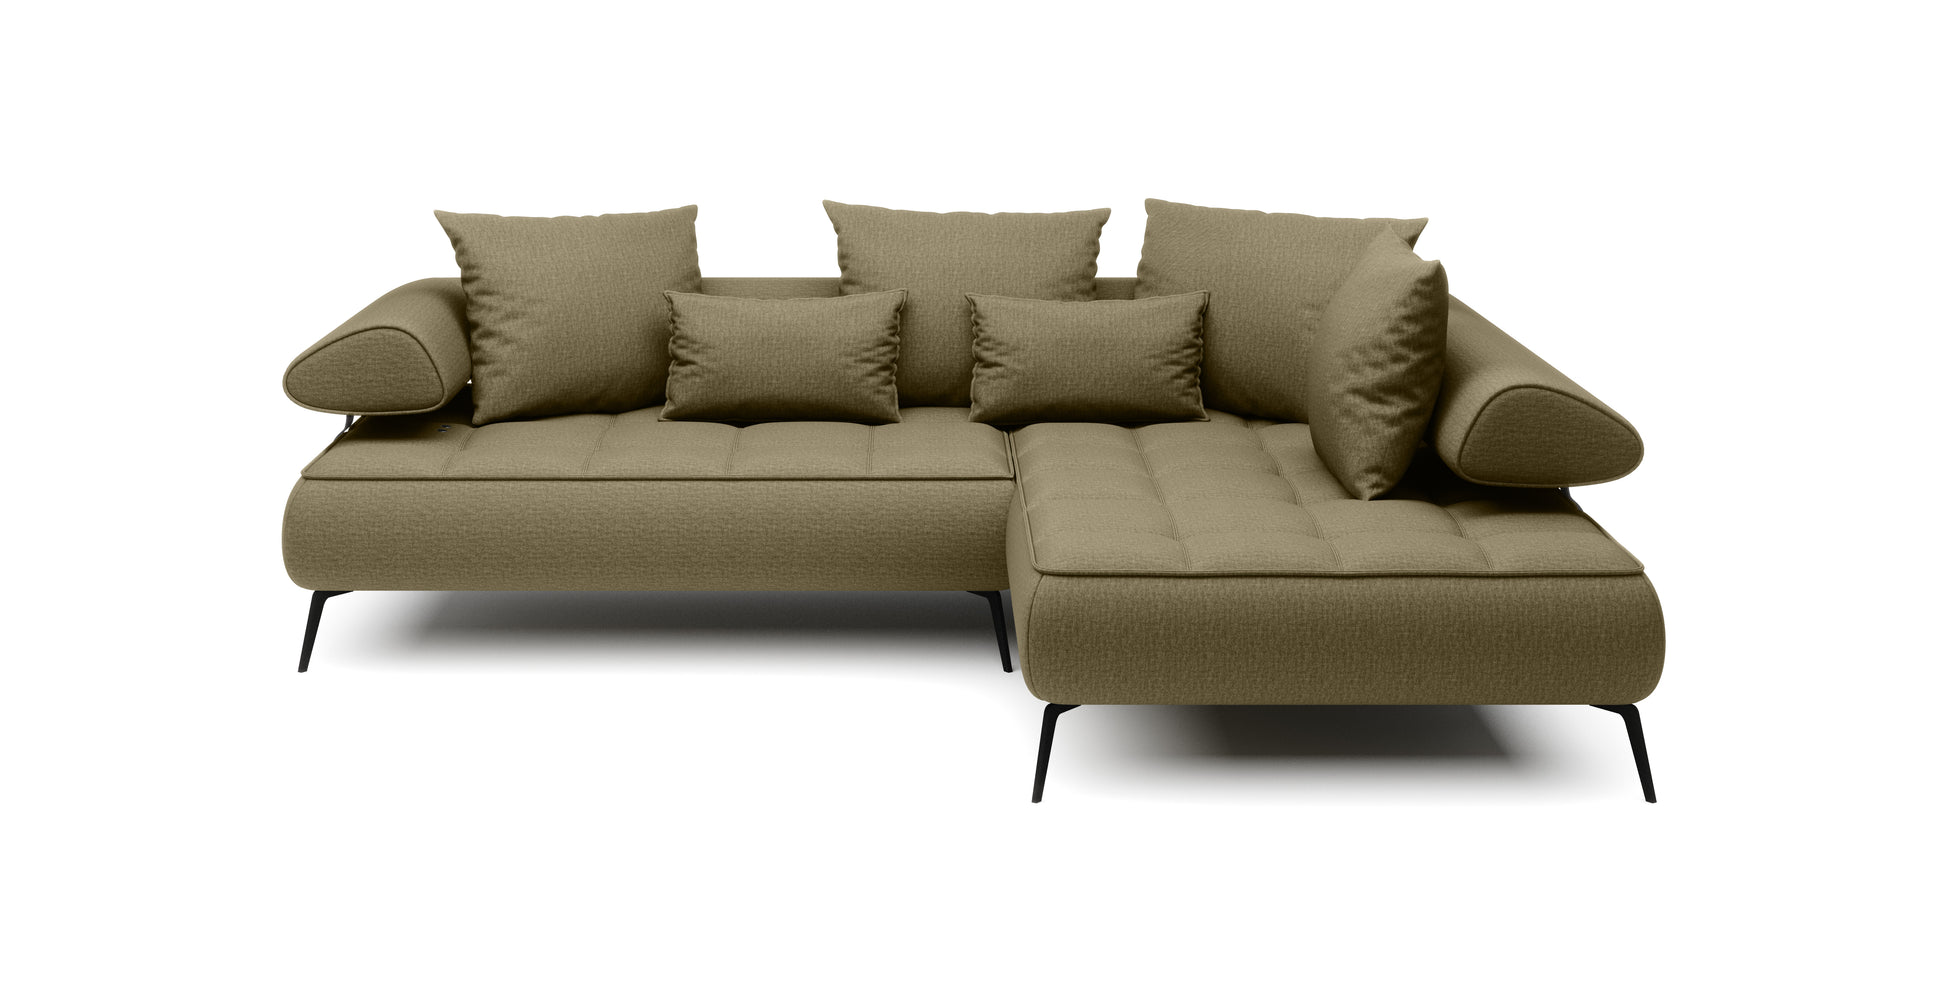 Dīvāns SFERA 268/224/165 cm - N1 Home